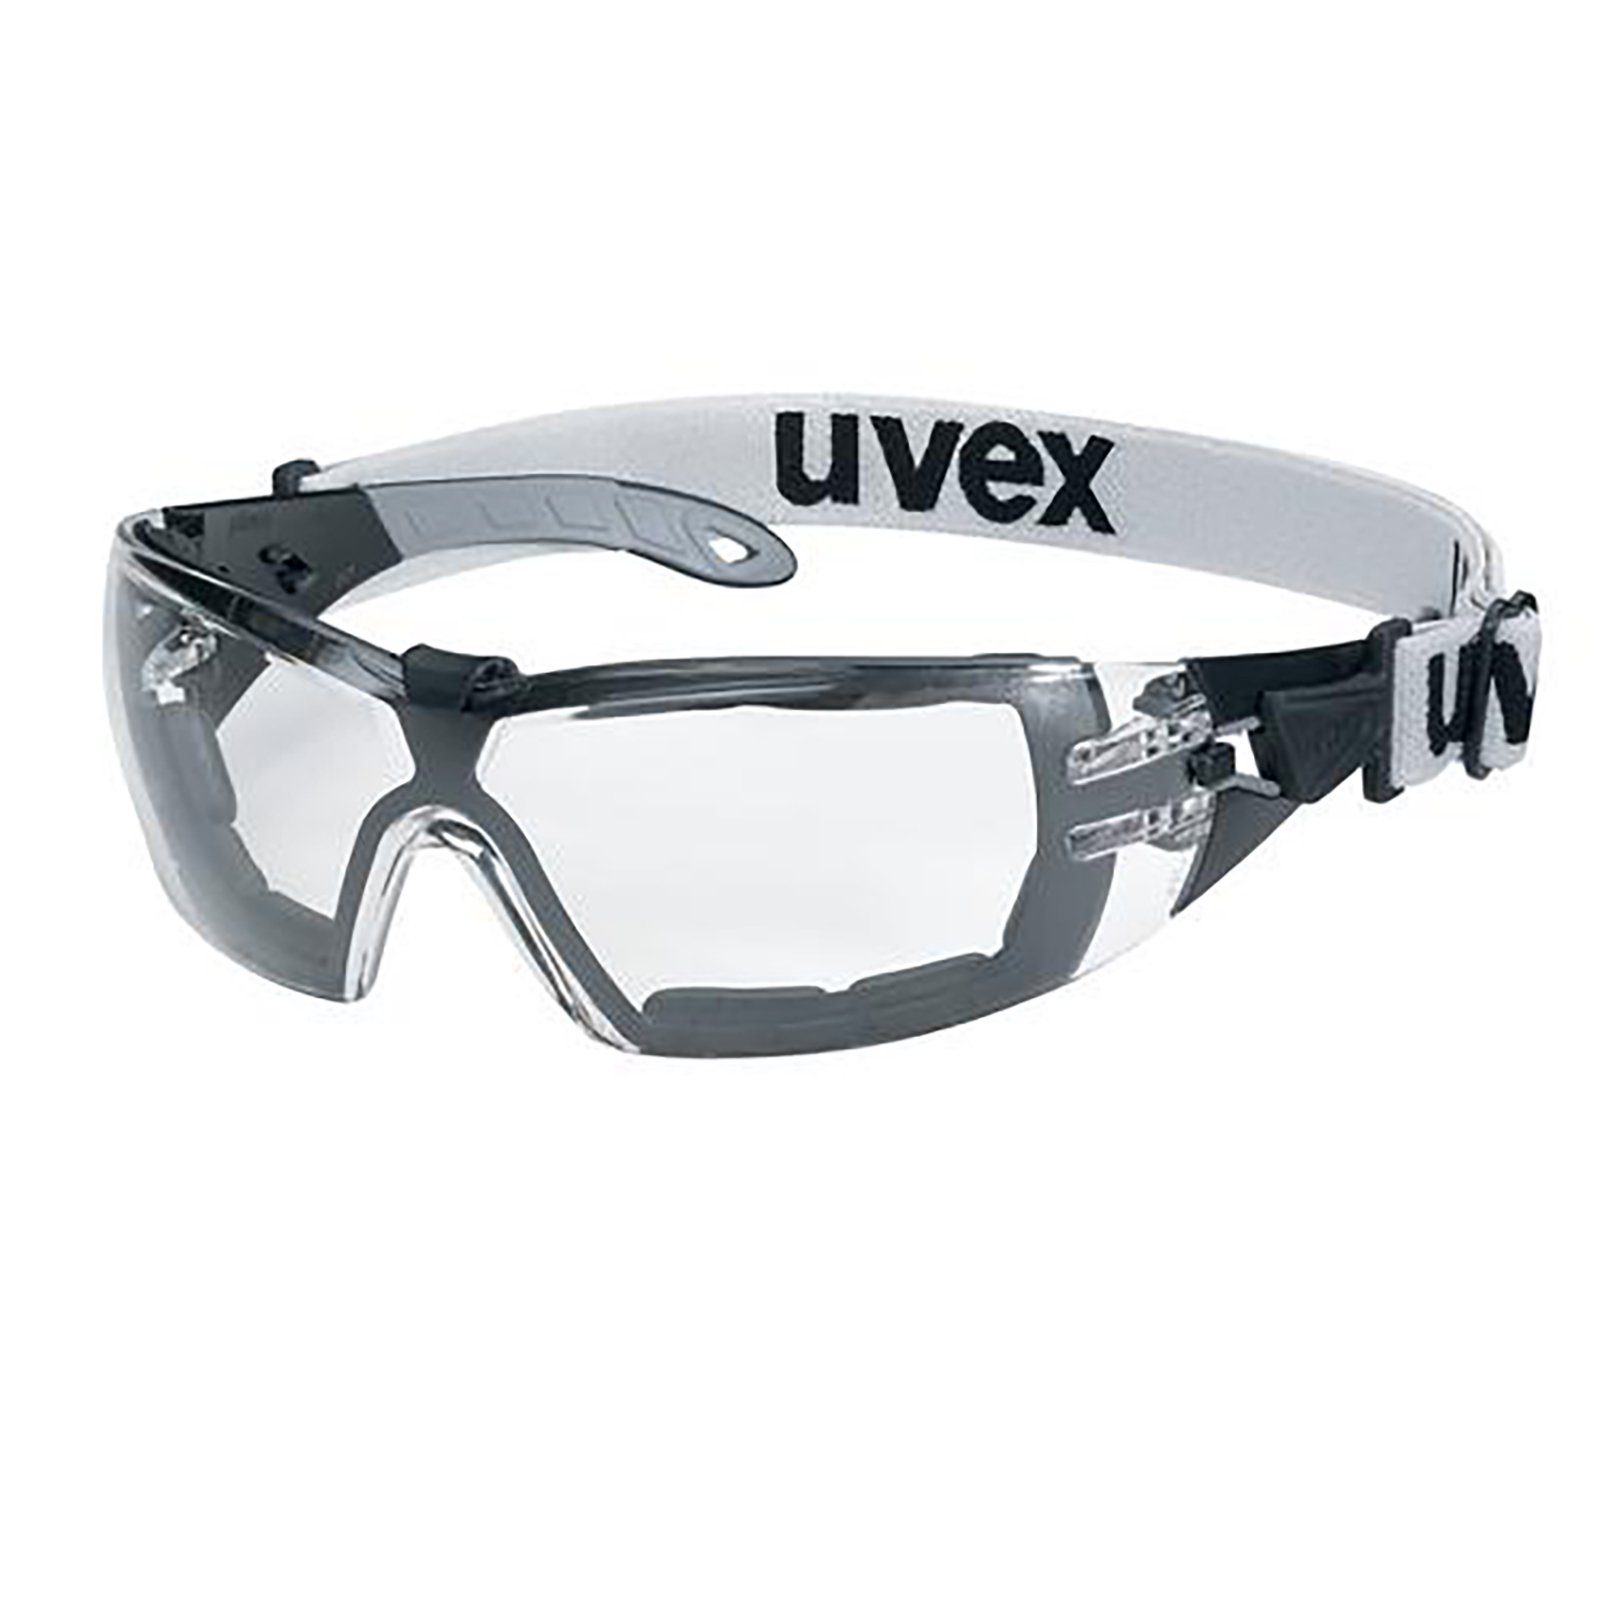 Uvex Arbeitsschutzbrille Bügelbrille pheos guard 9192180 sv ext